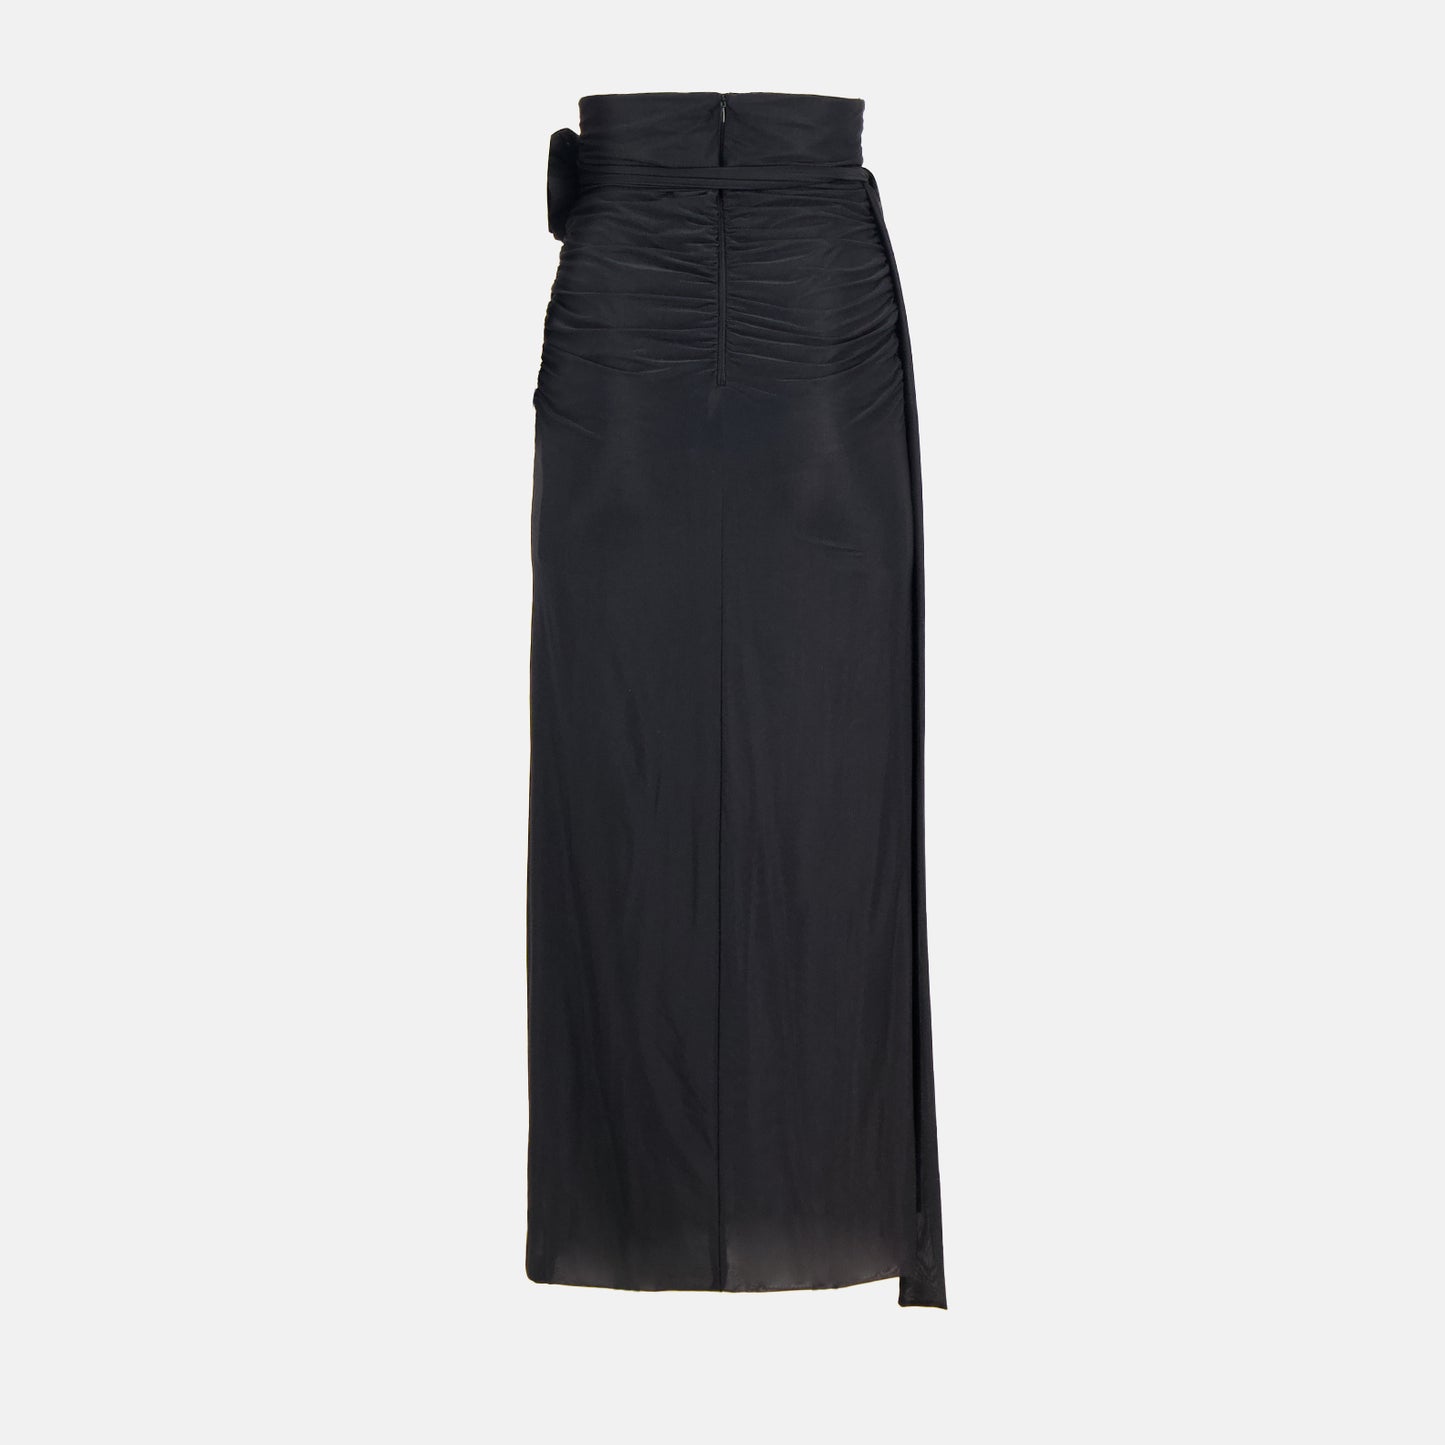 Long skirt 1987-88